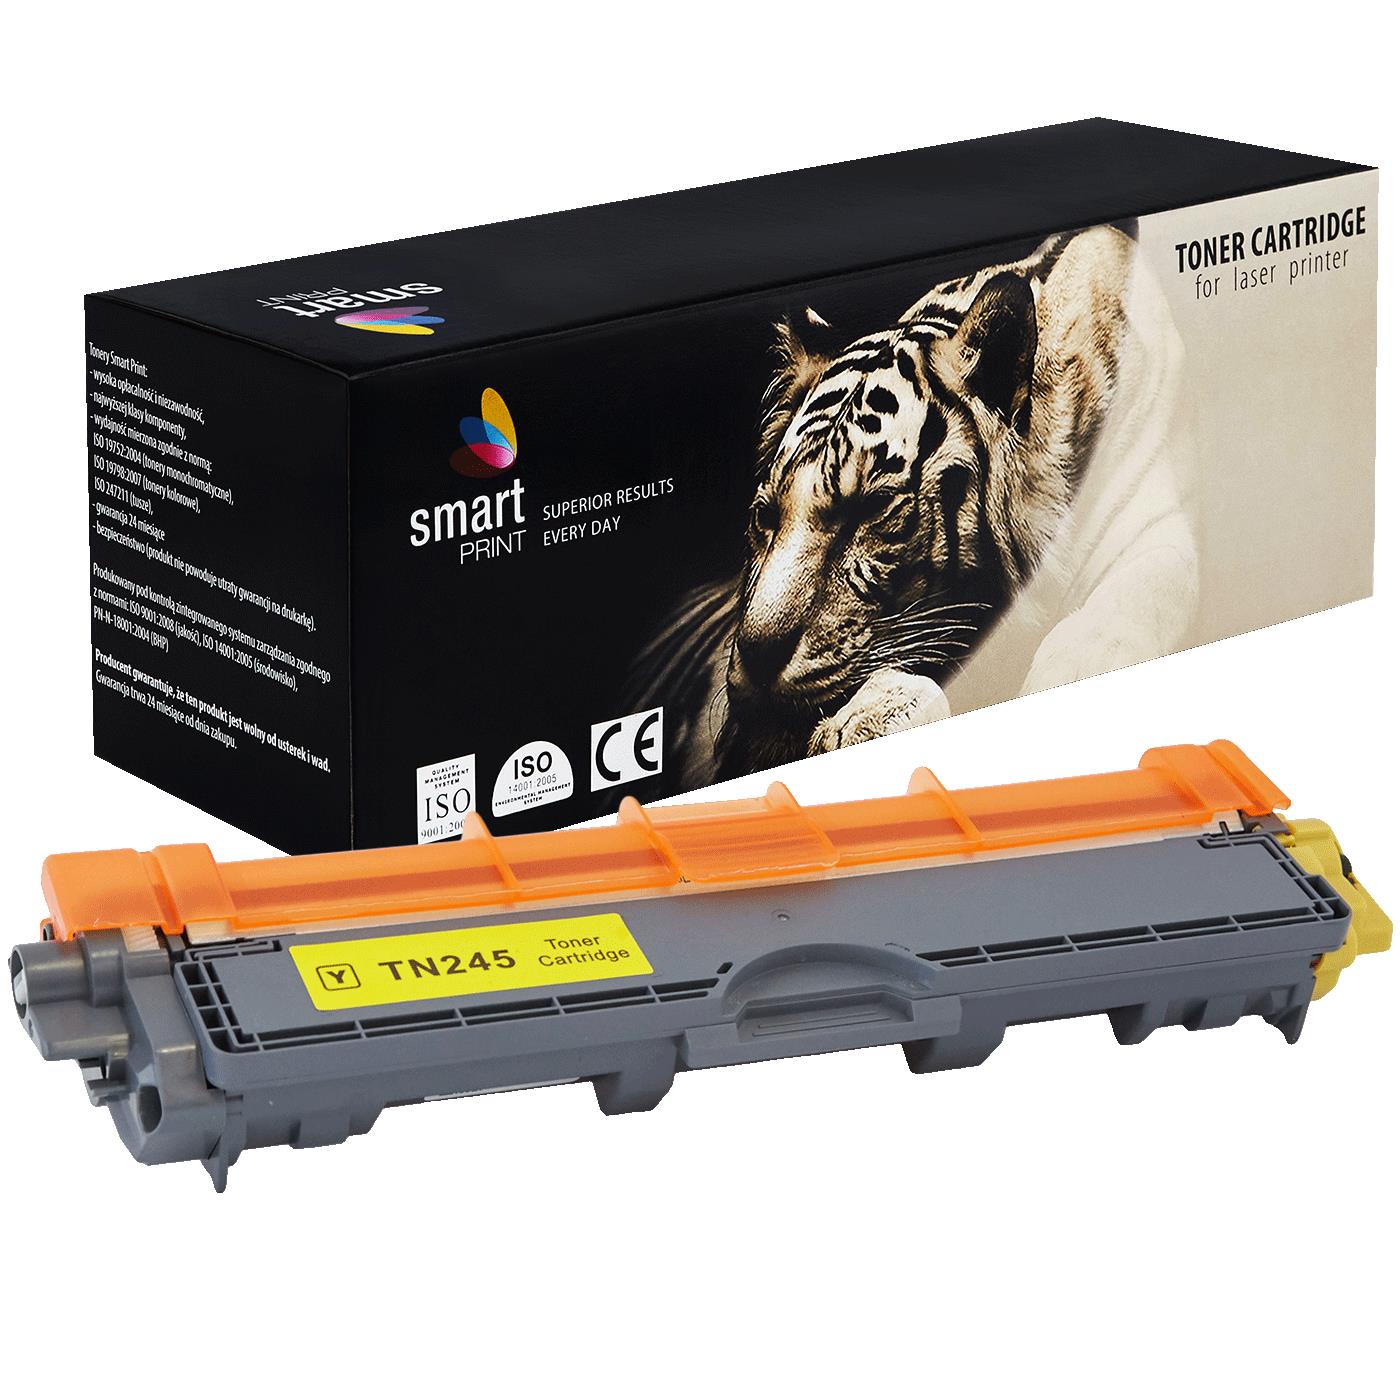 съвместима тонер касета за принтери и печатащи устройства на Brother MFC-9330 CDW Toner BR-245Y | TN245Y / TN241Y. Ниски цени, прецизно изпълнение, високо качество.